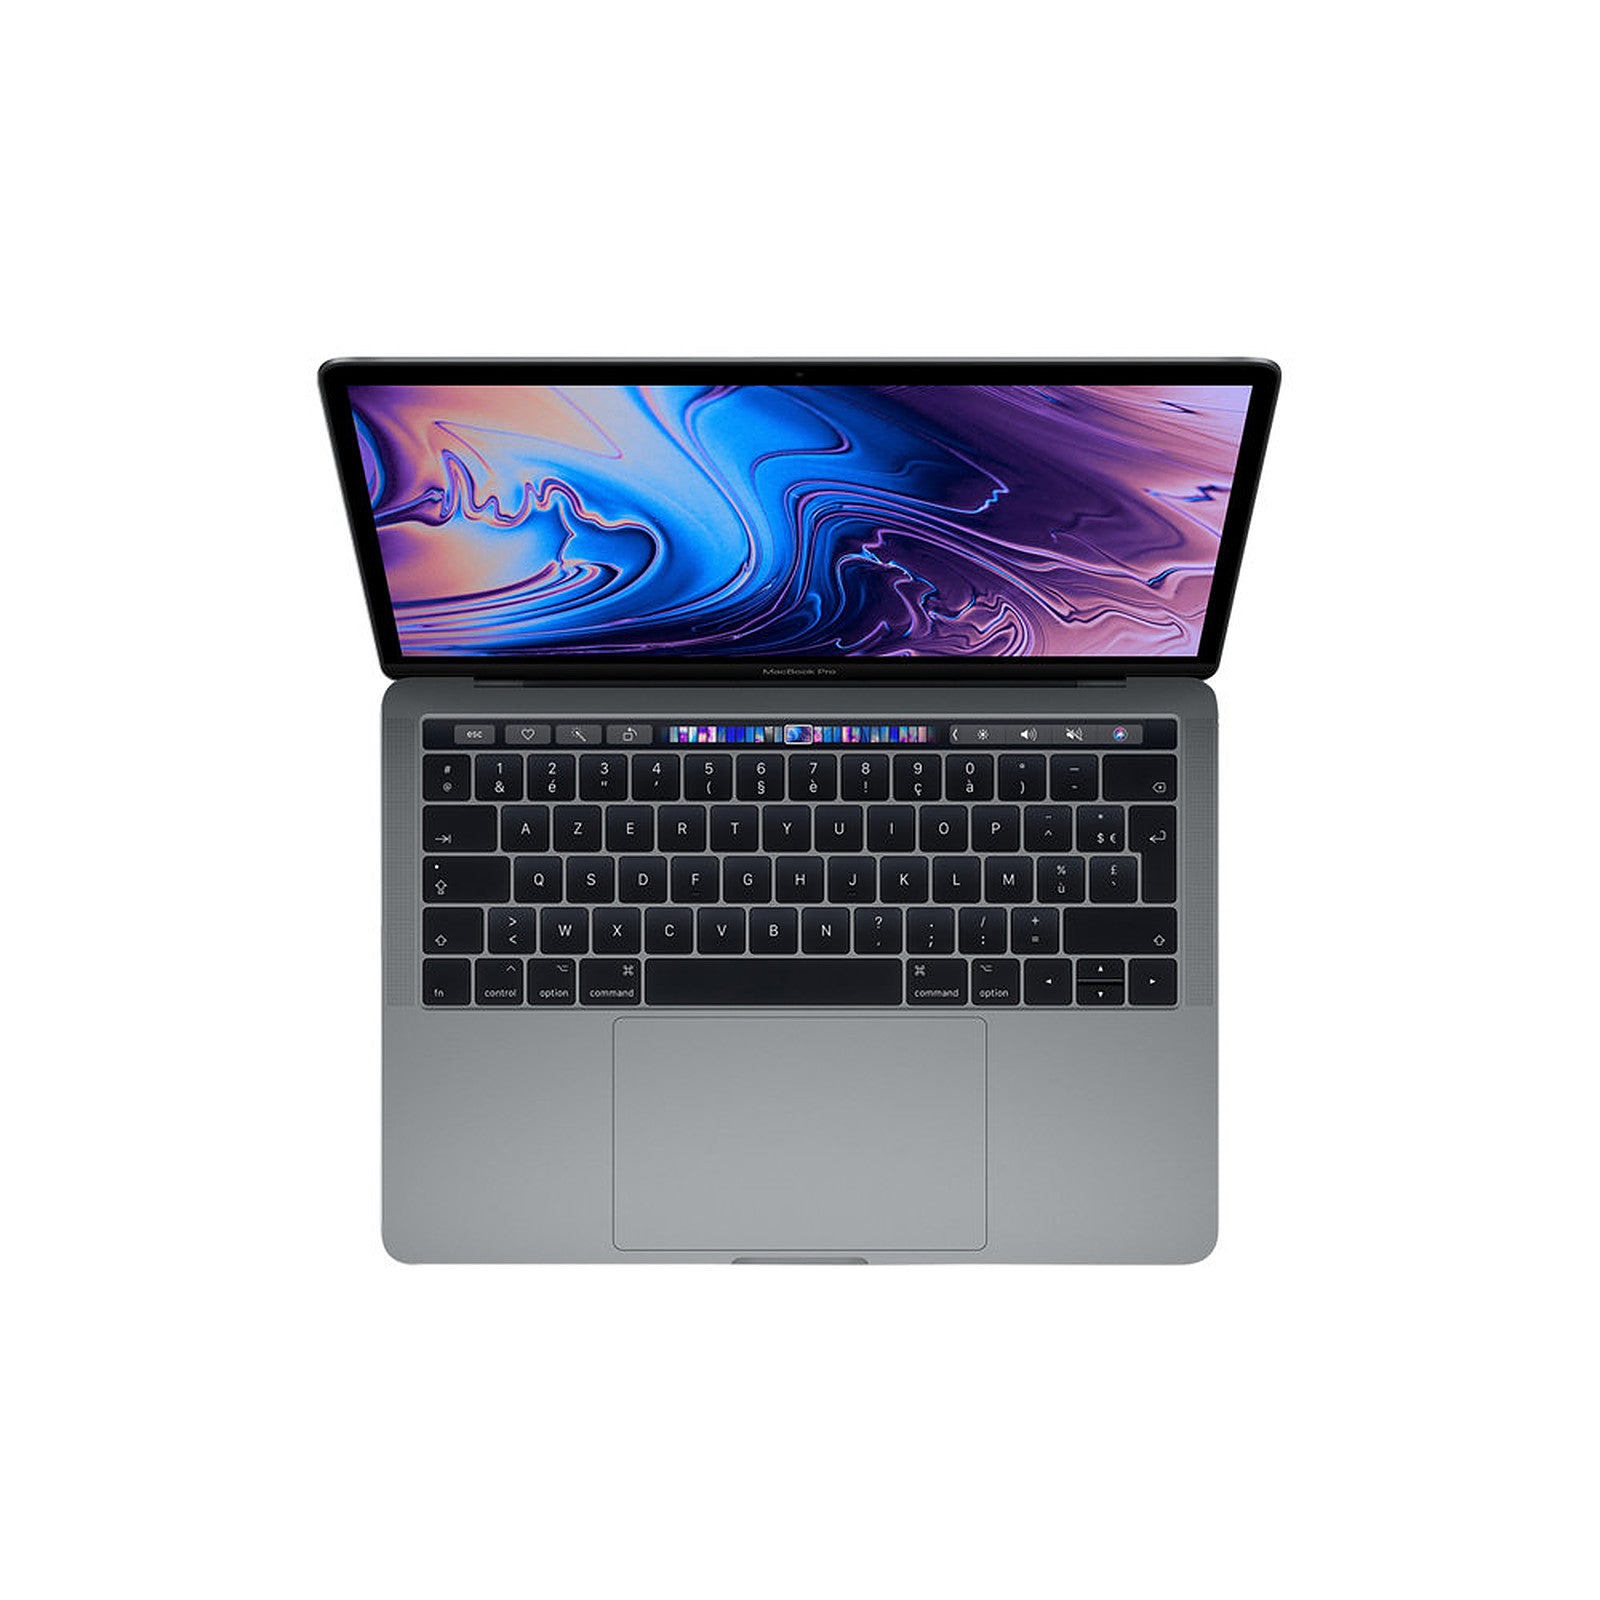 MacBook Pro 13" (2018) - i7 - 500 GB SSD - 16 GB RAM - A1989